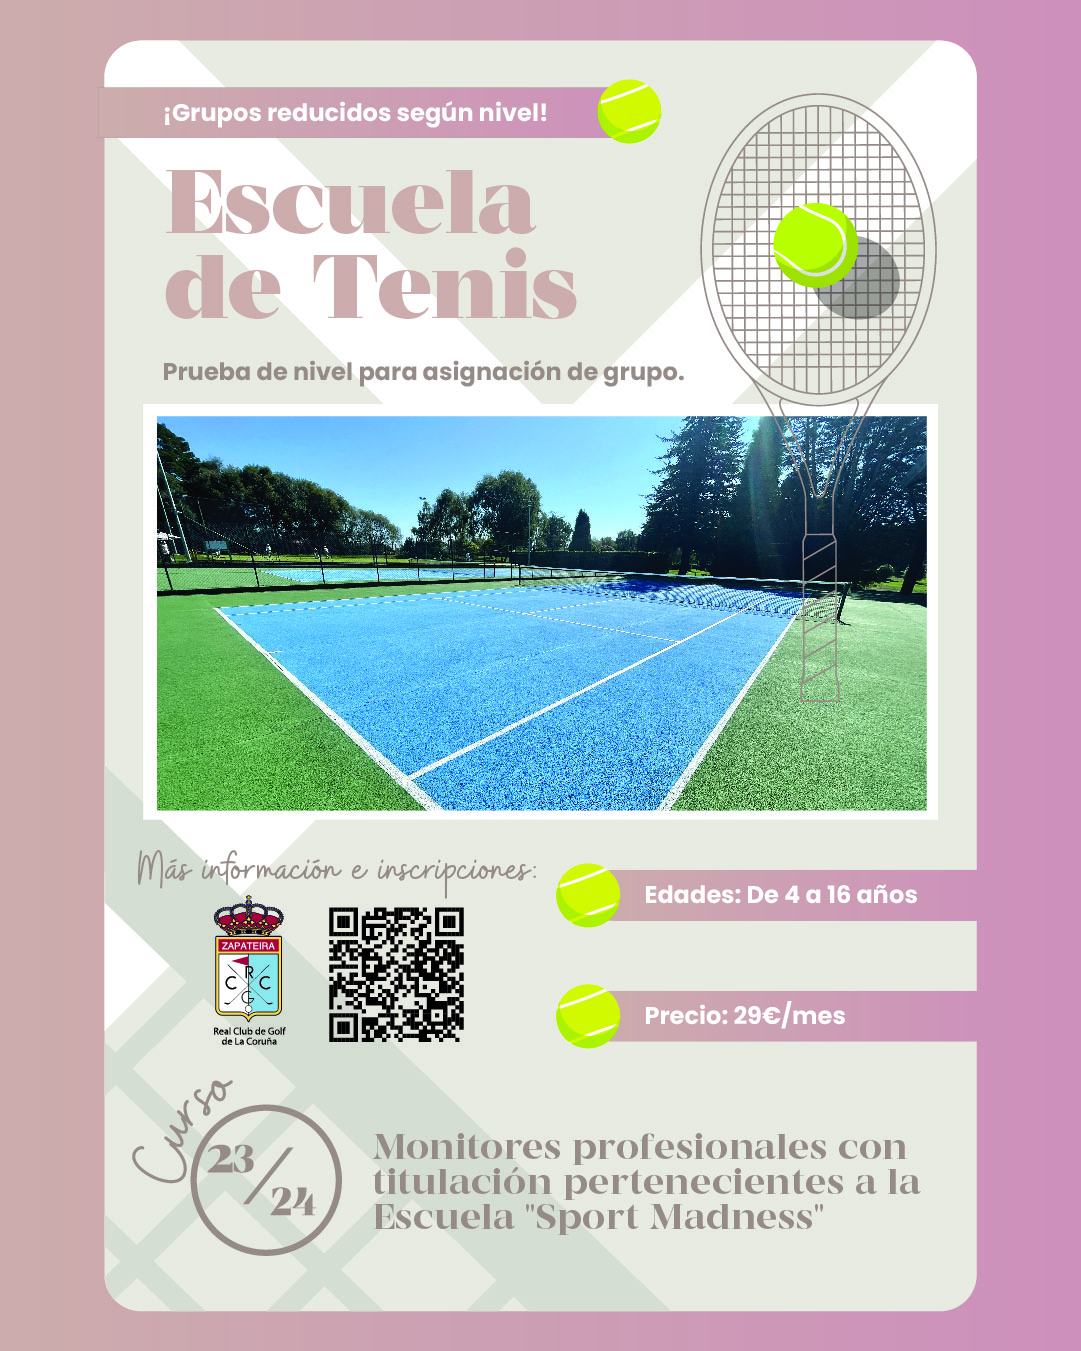 Escuela de tenis: inscripciones abiertas